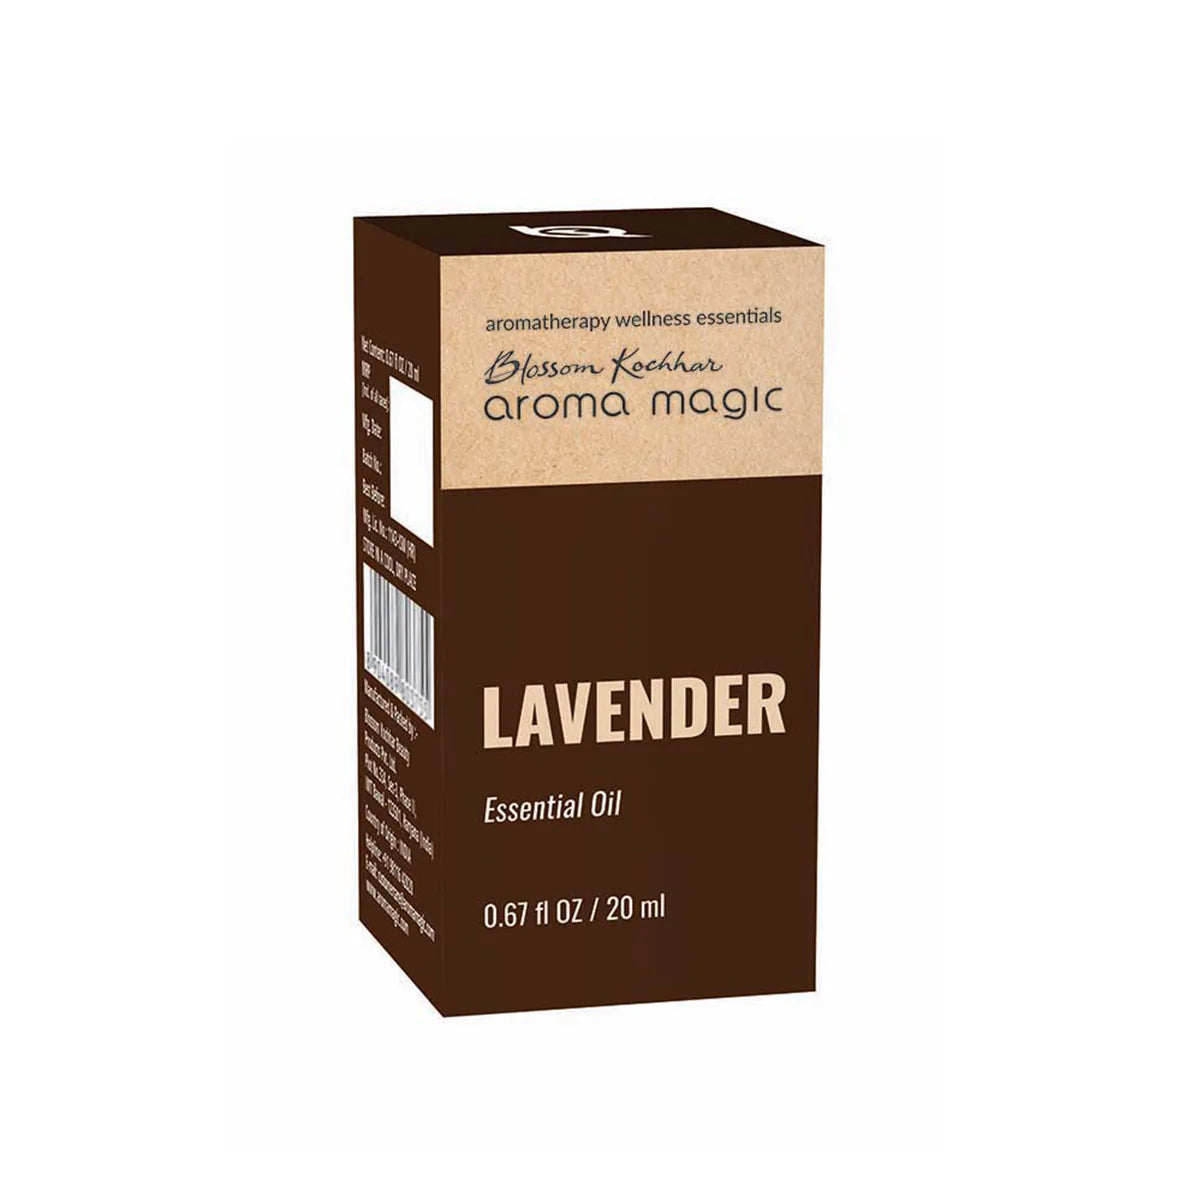 Aroma Magic Lavender Essential Oil (20ml) Aroma Magic